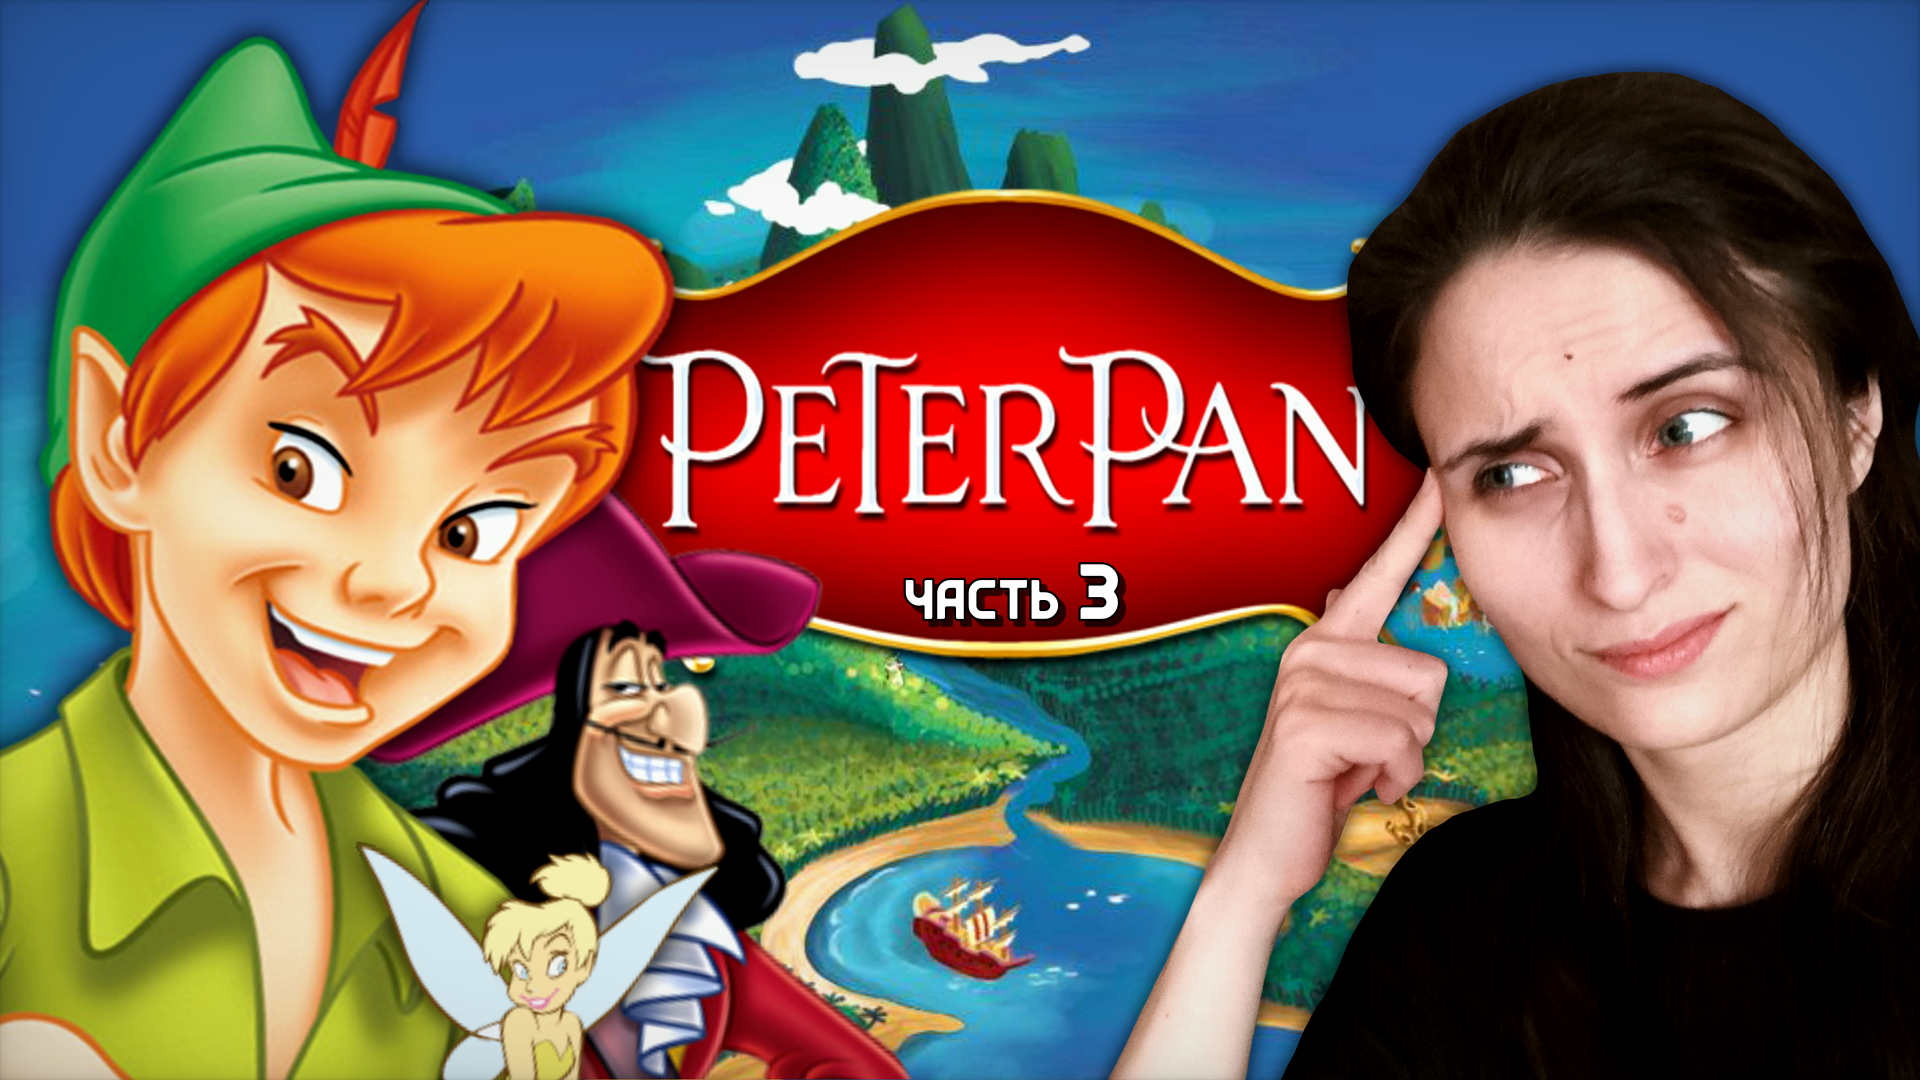 ПРОБА ВОЛШЕБНОГО ПОРОШКА ➤ Peter Pan: Return to Neverland [часть 3, прохождение PS1]